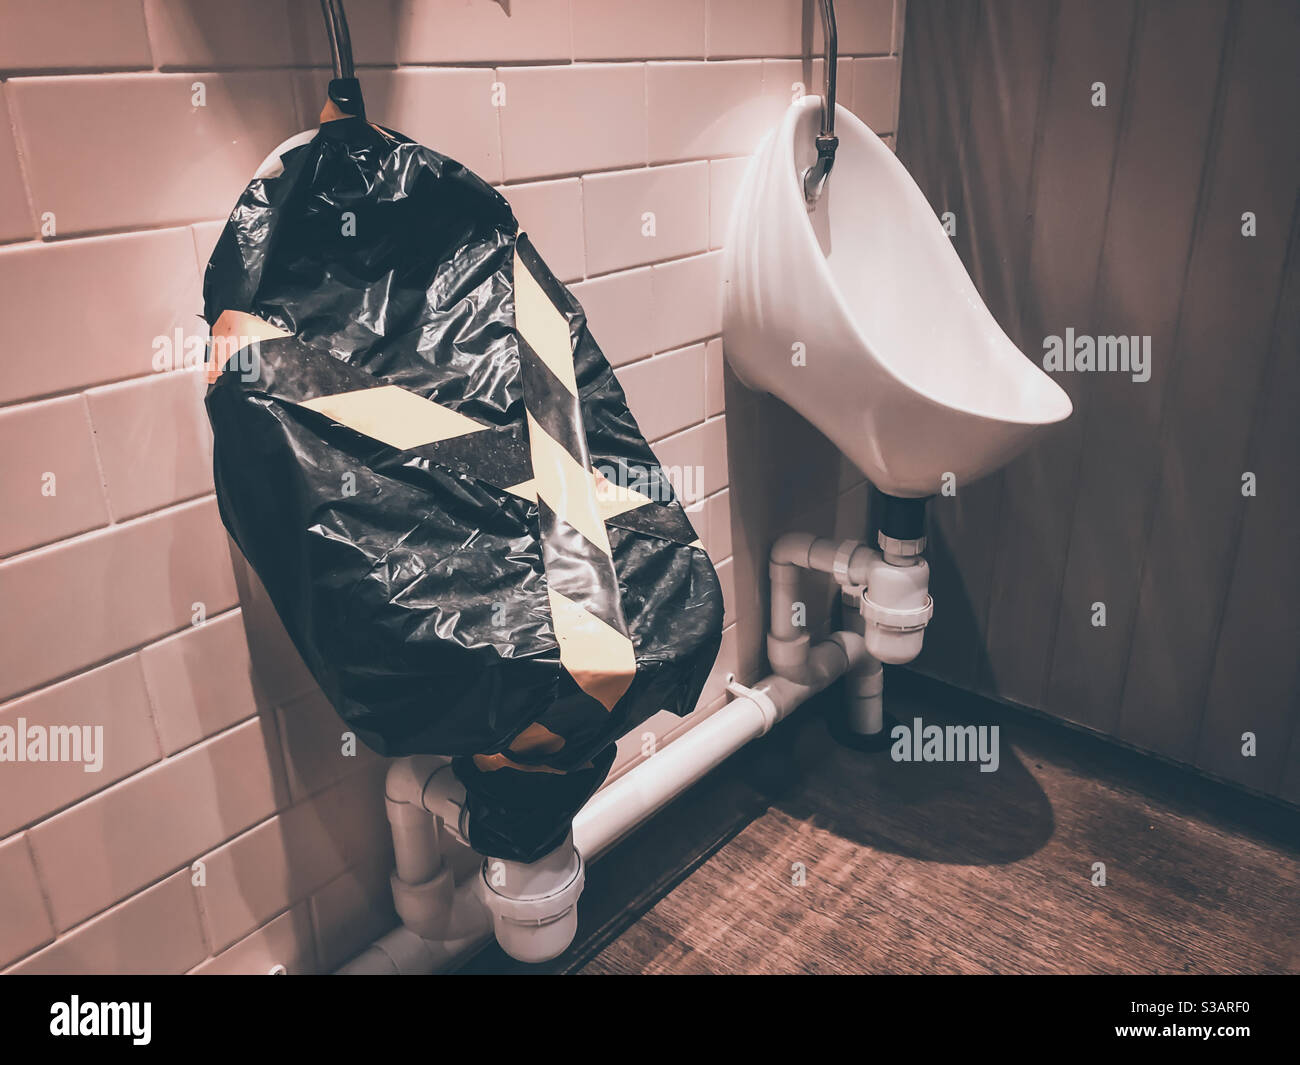 Ein Urinal wird in den öffentlichen Toiletten eines Mannes als Folge der sozialen Distanzierungsrichtlinien abgesperrt, um die Ausbreitung des Coronavirus zu verhindern. Stockfoto